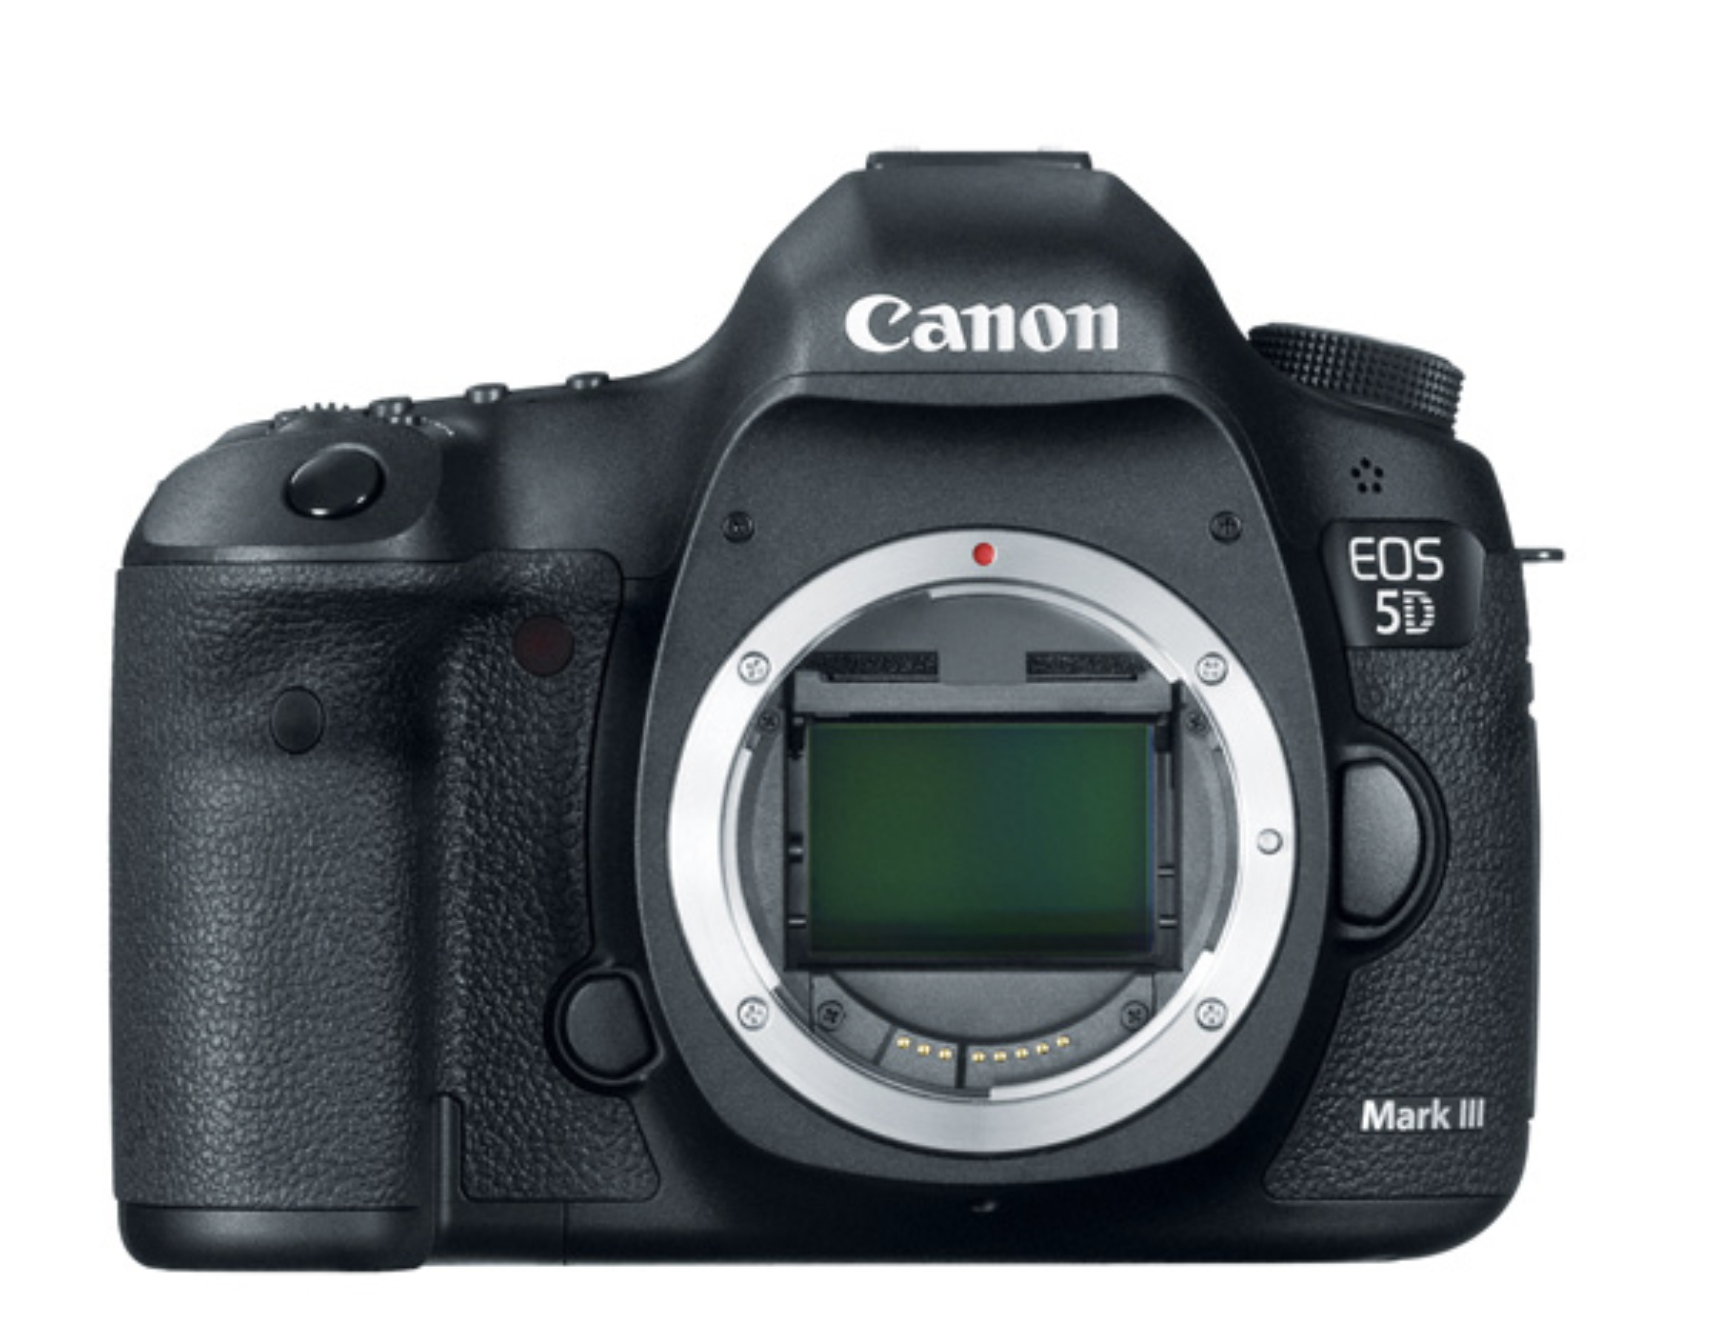 Canon EOS 5D Mark III DSLR Cameras for wedding photography